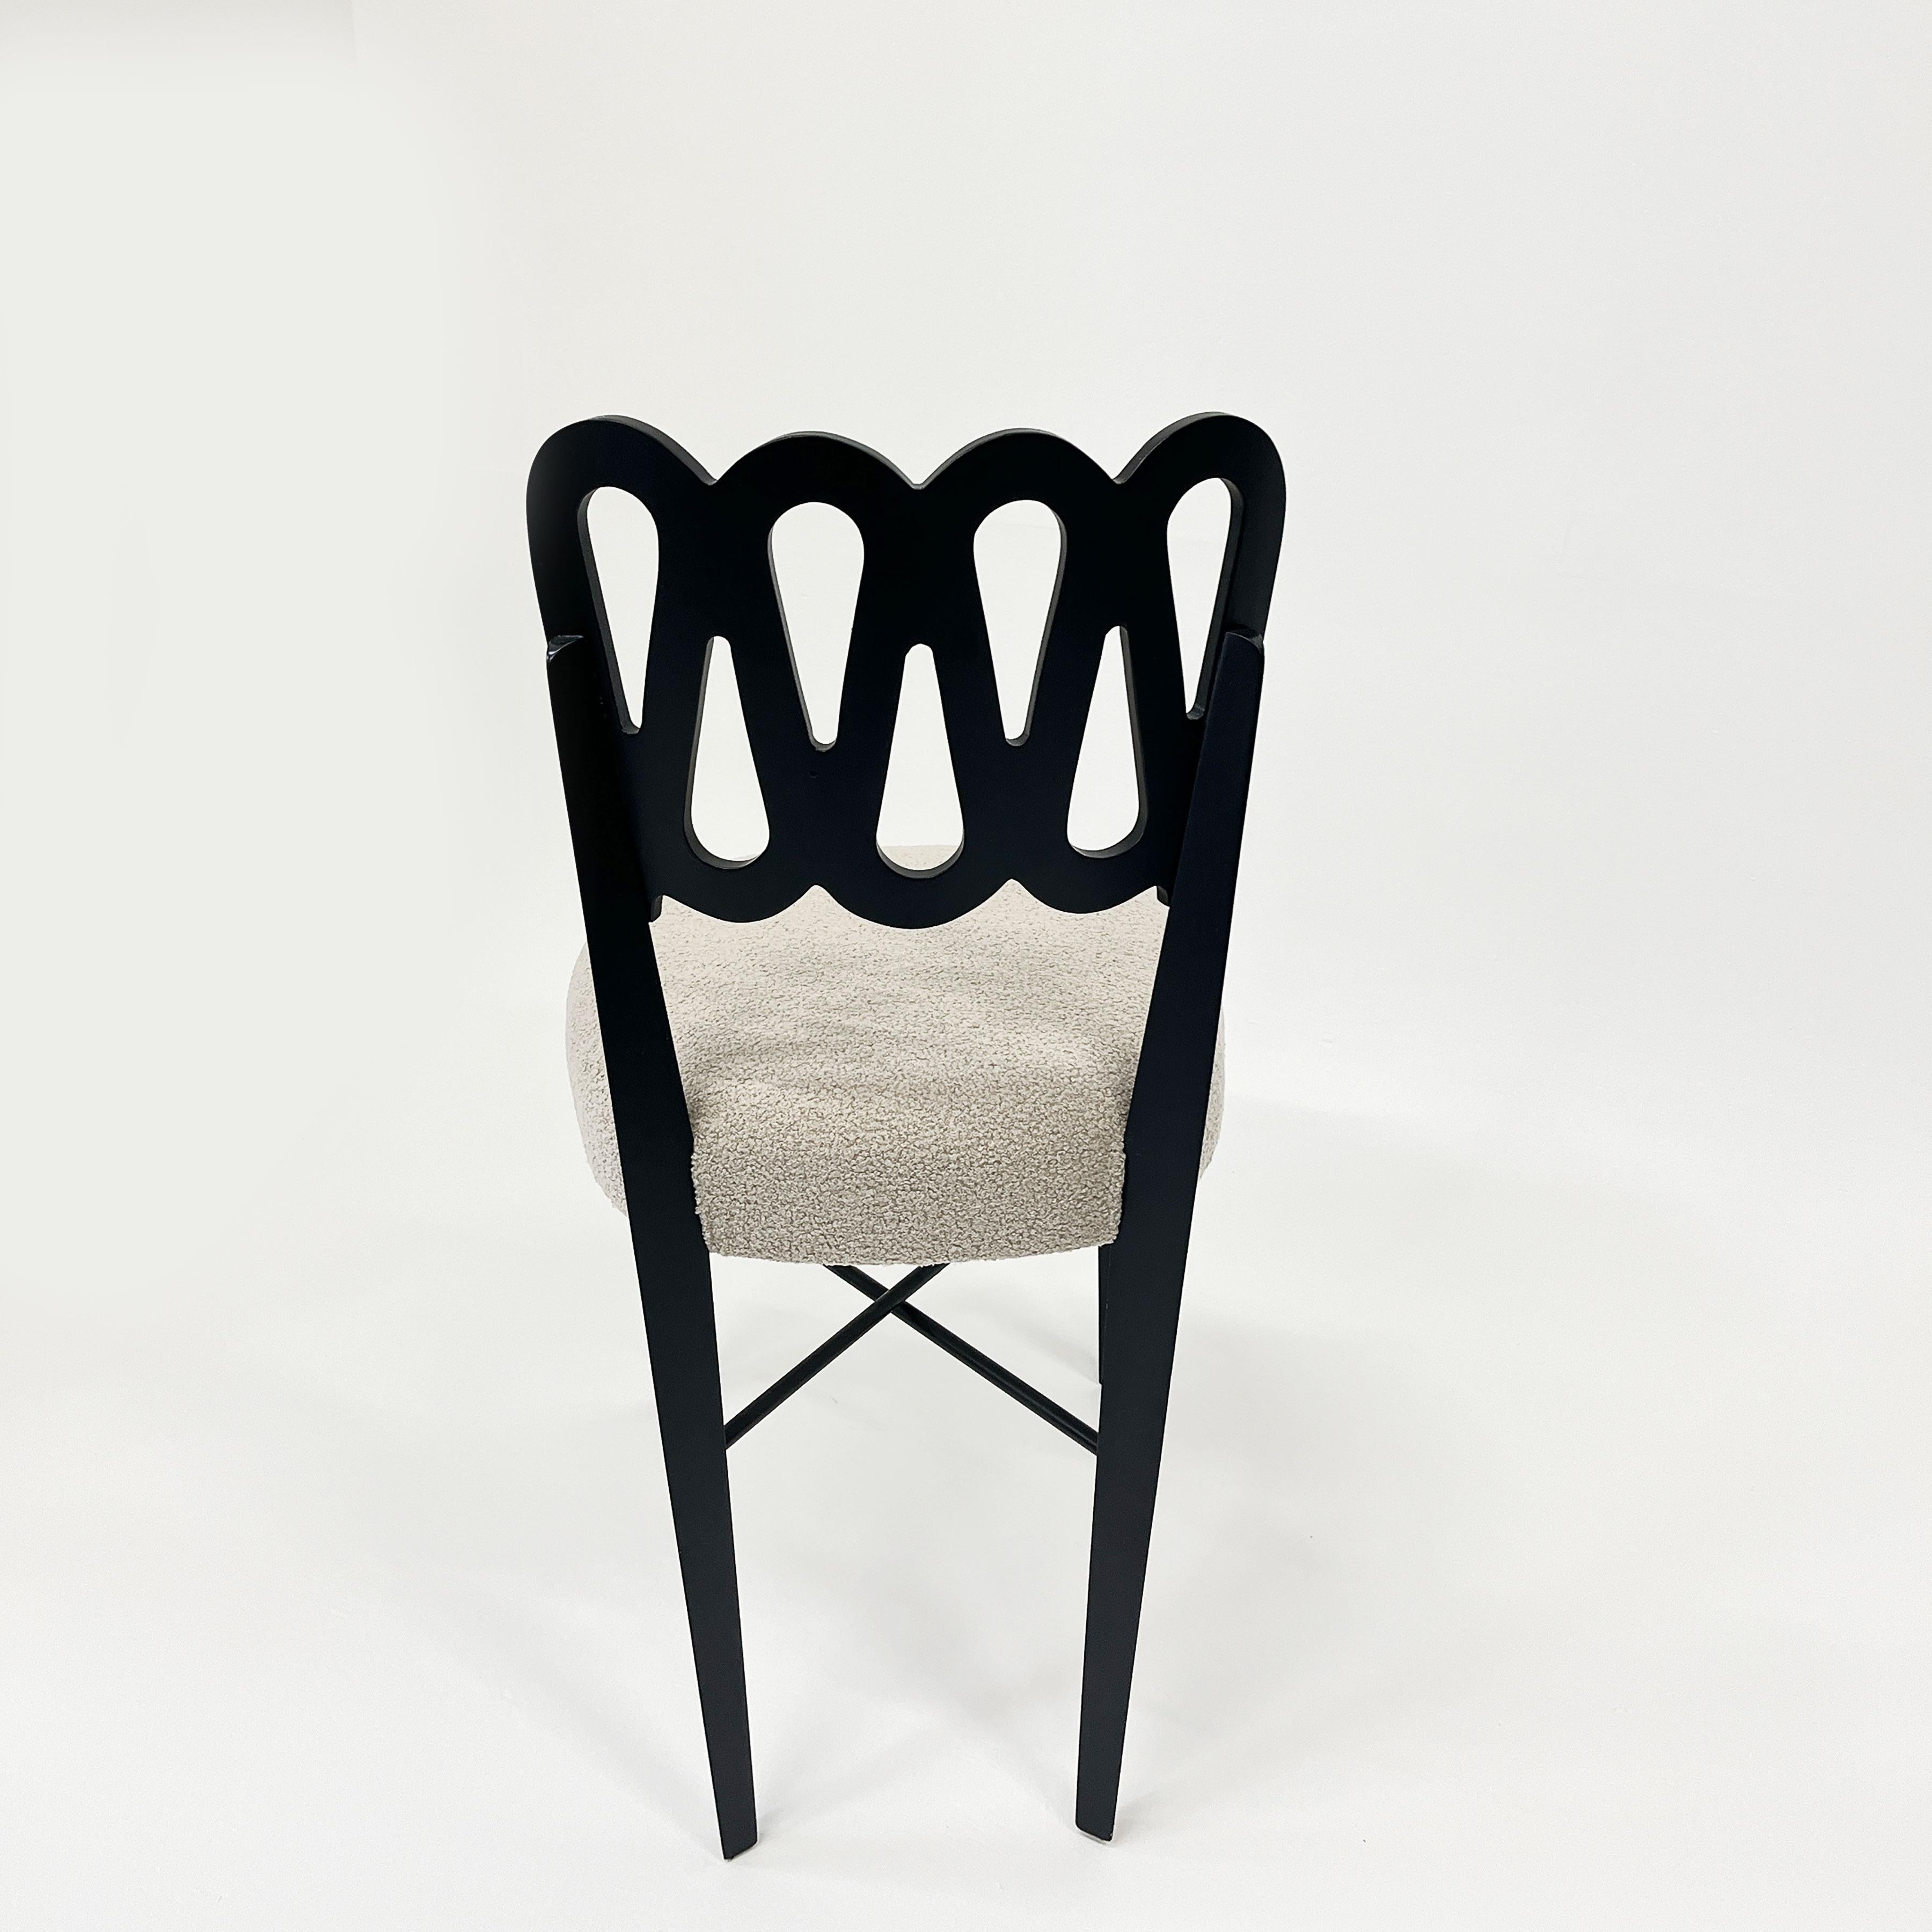 Créée par le célèbre designer italien Gio Ponti,  dans les années 50 et une fabrication italienne de qualité.
La chaise est fabriquée en élégant bois verni noir et retapissée en boucle crème. Le dossier particulier est constitué d'un serpentin en